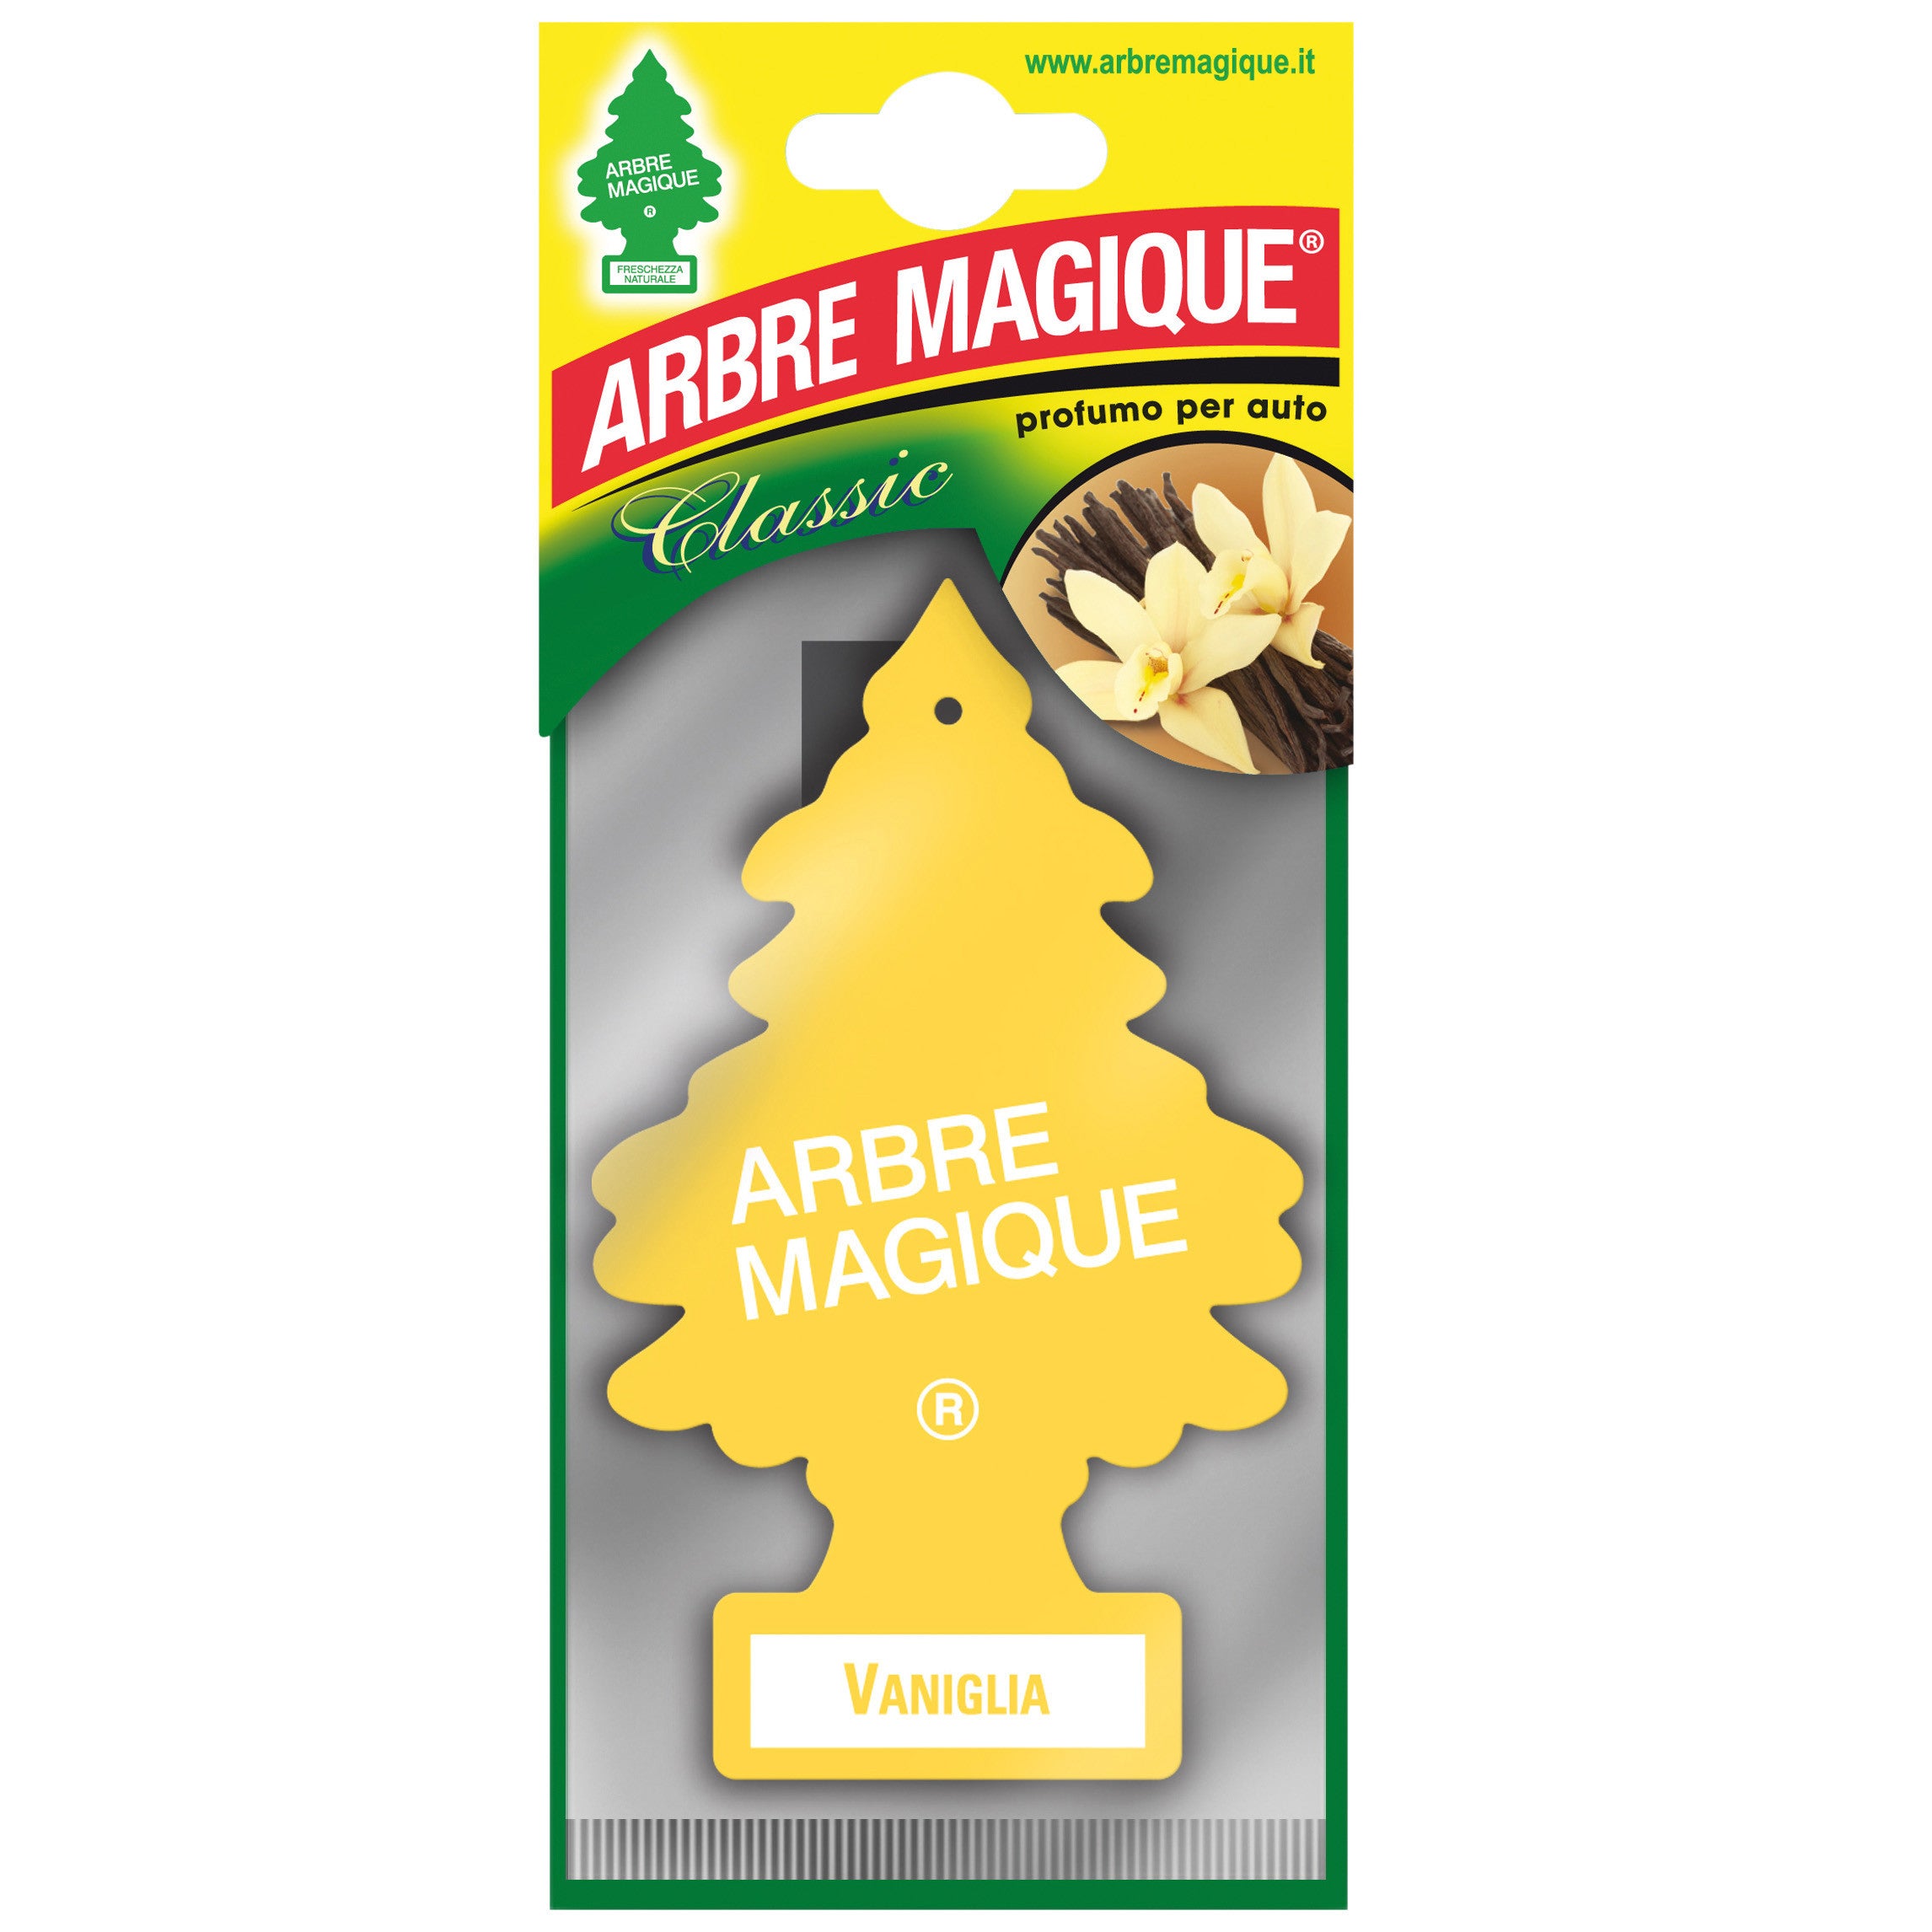 Arbre magique classic vaniglia